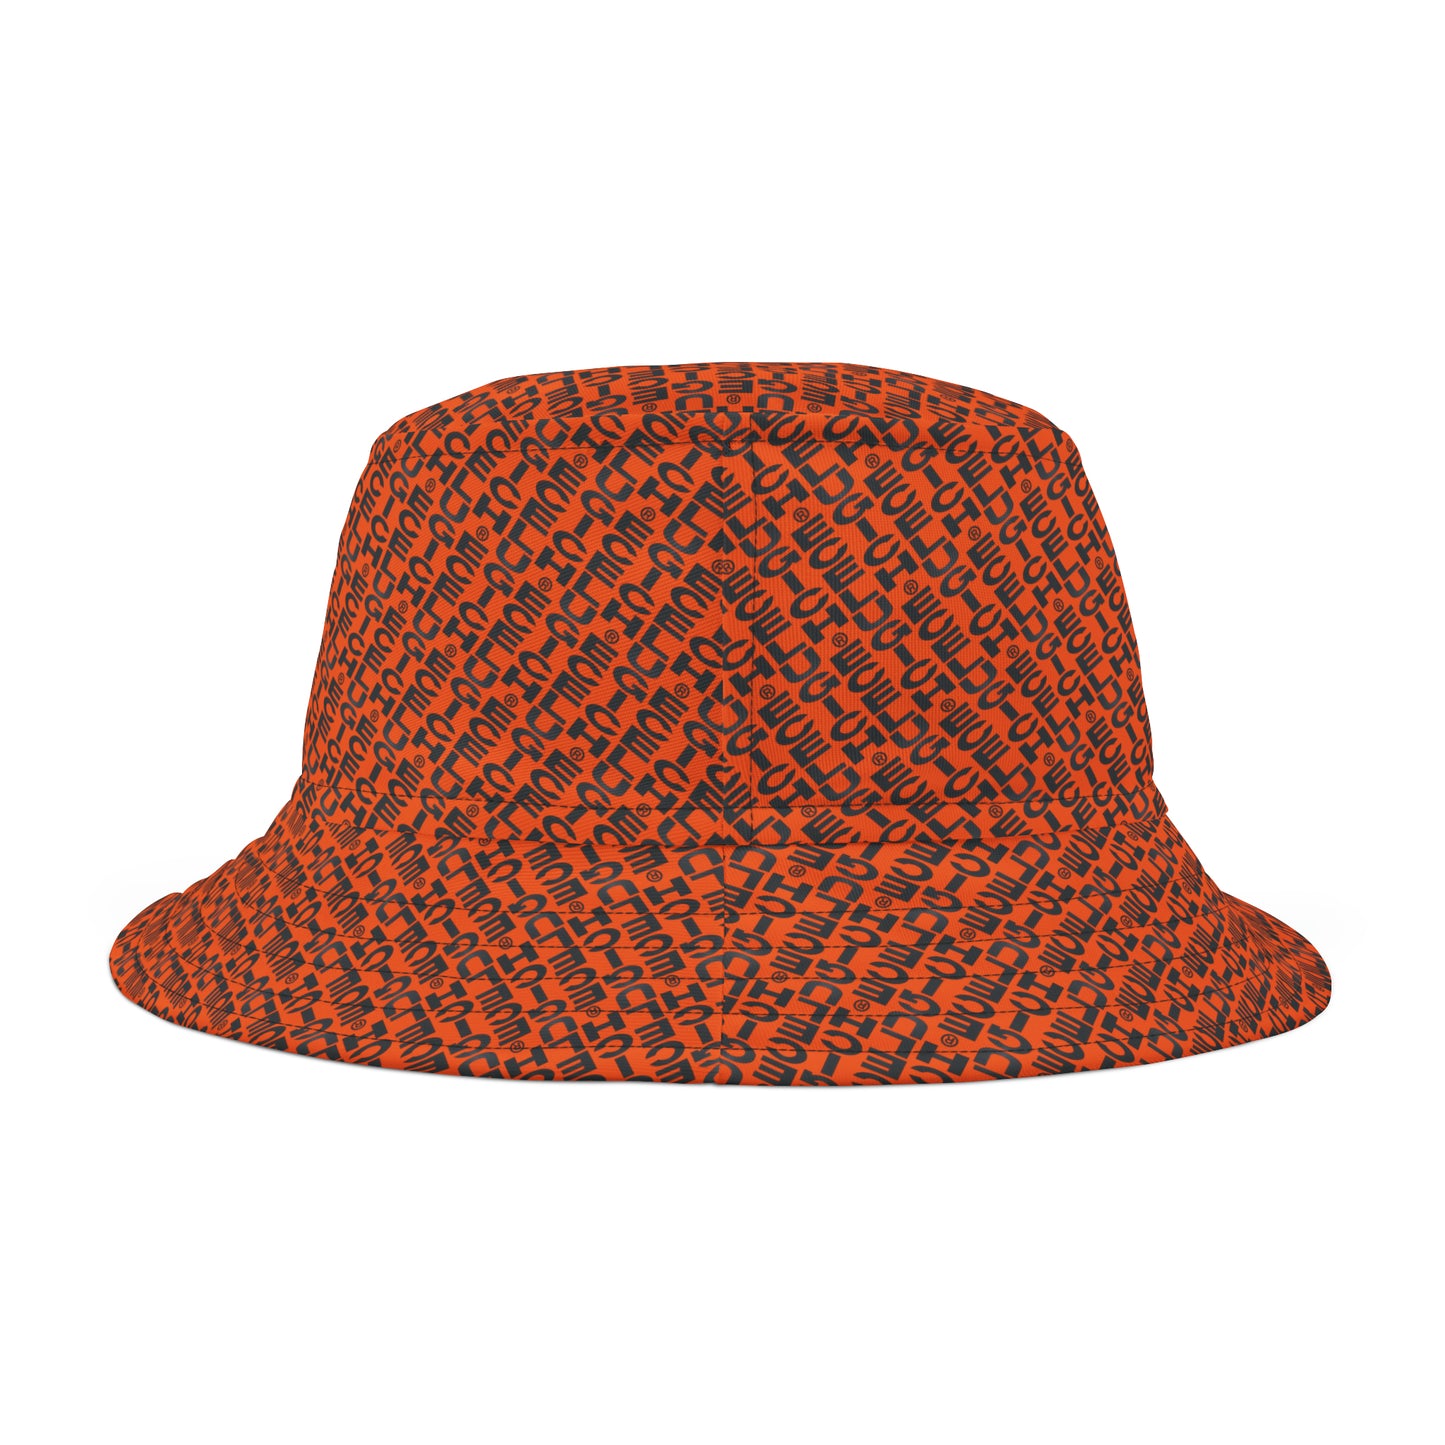 ECELUGICH Bucket Hat